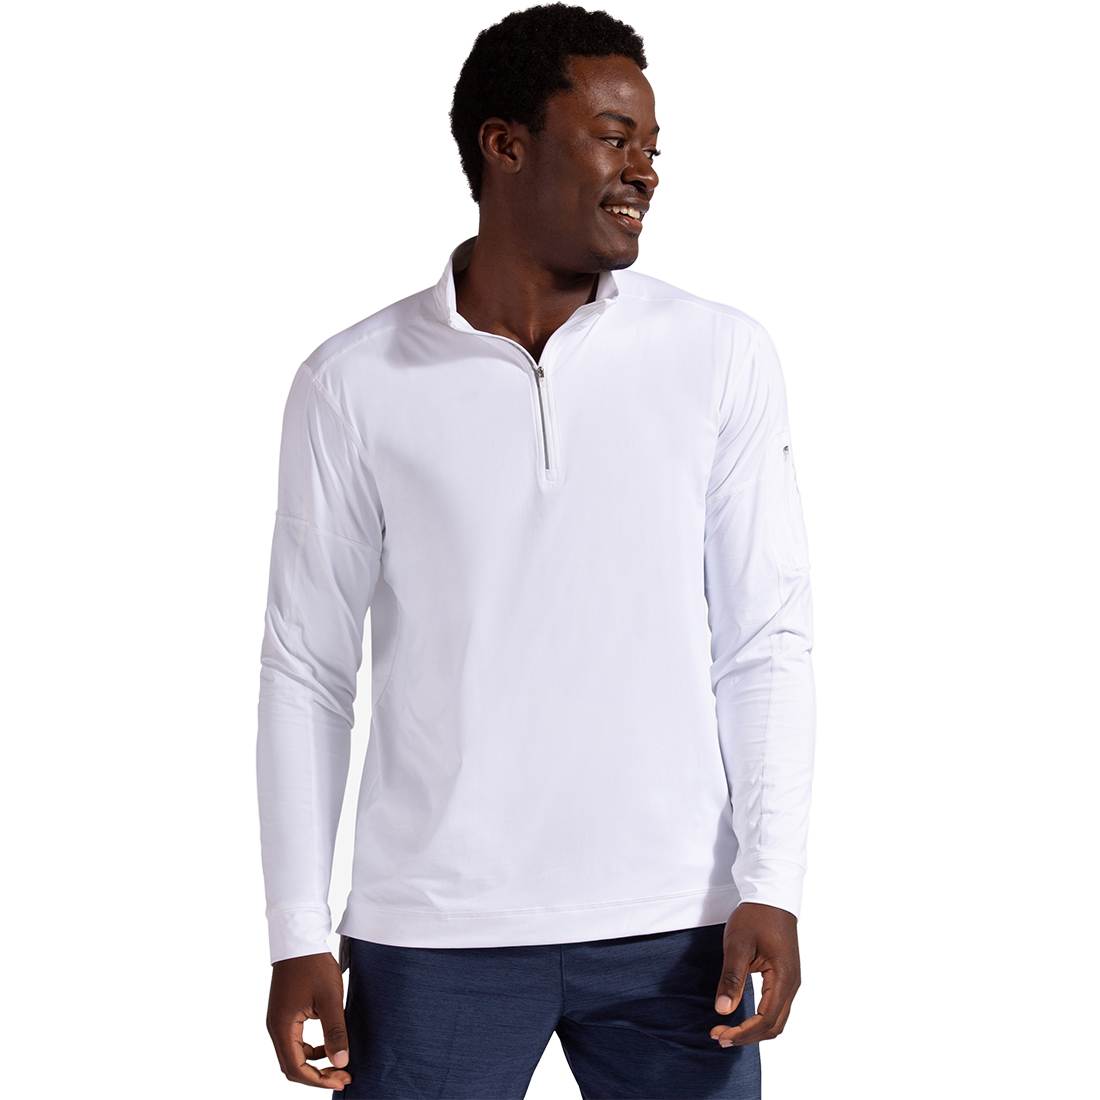 BloqUV Men's UV Protection Mock Zip Long Sleeve Tennis Shirt (White)